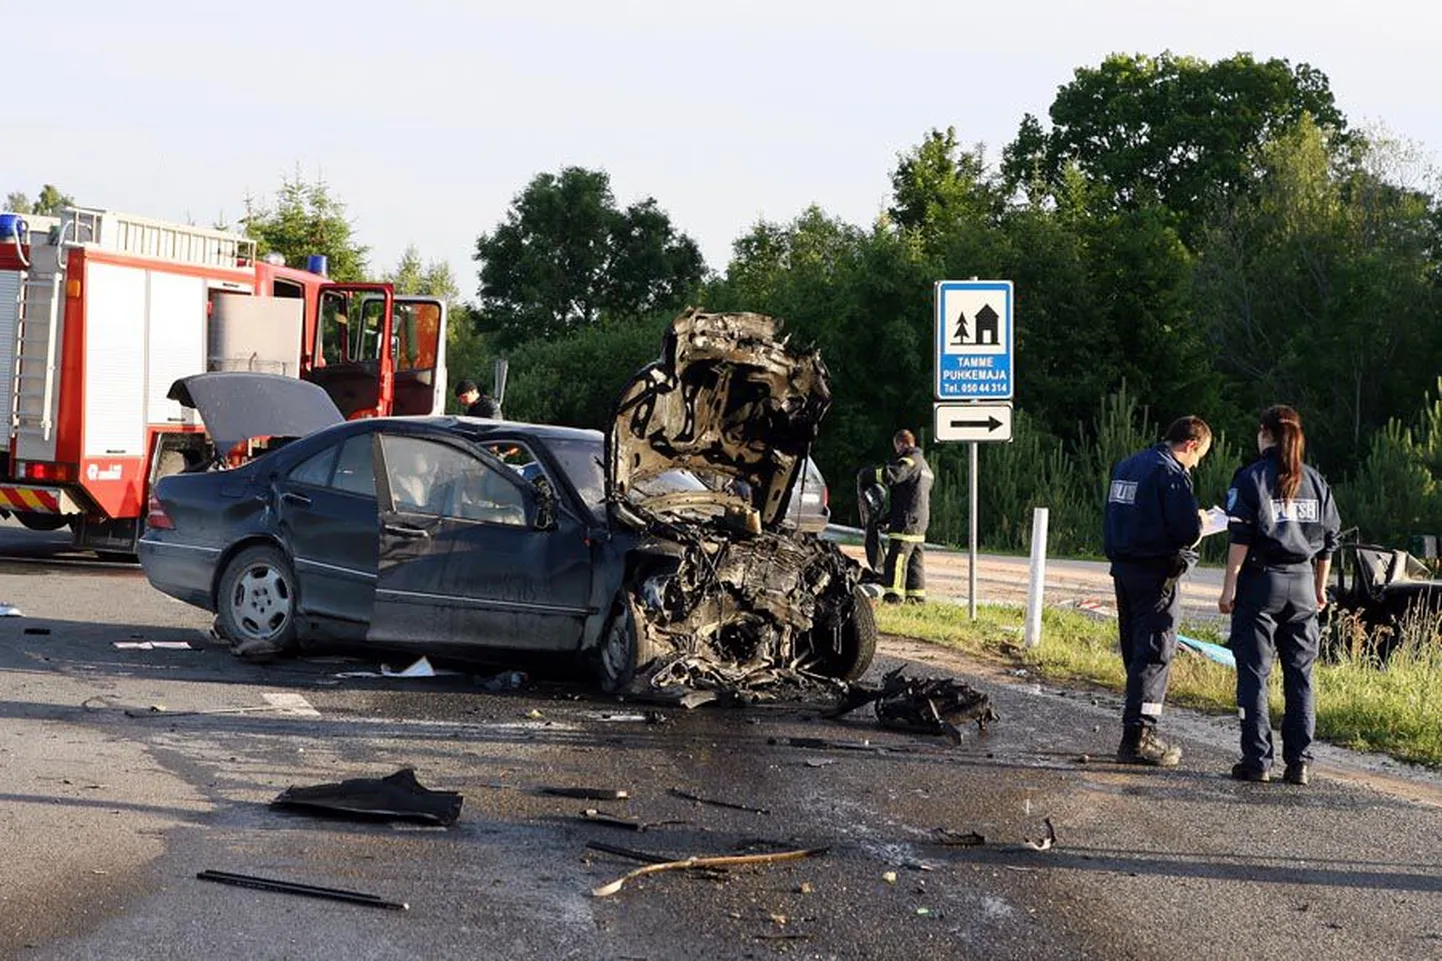 Ränk laupkokkupõrge juhtus 27. juunil veidi pärast kella 20 Viljandi—Karksi-Nuia maanteel Orika bussipeatuses.